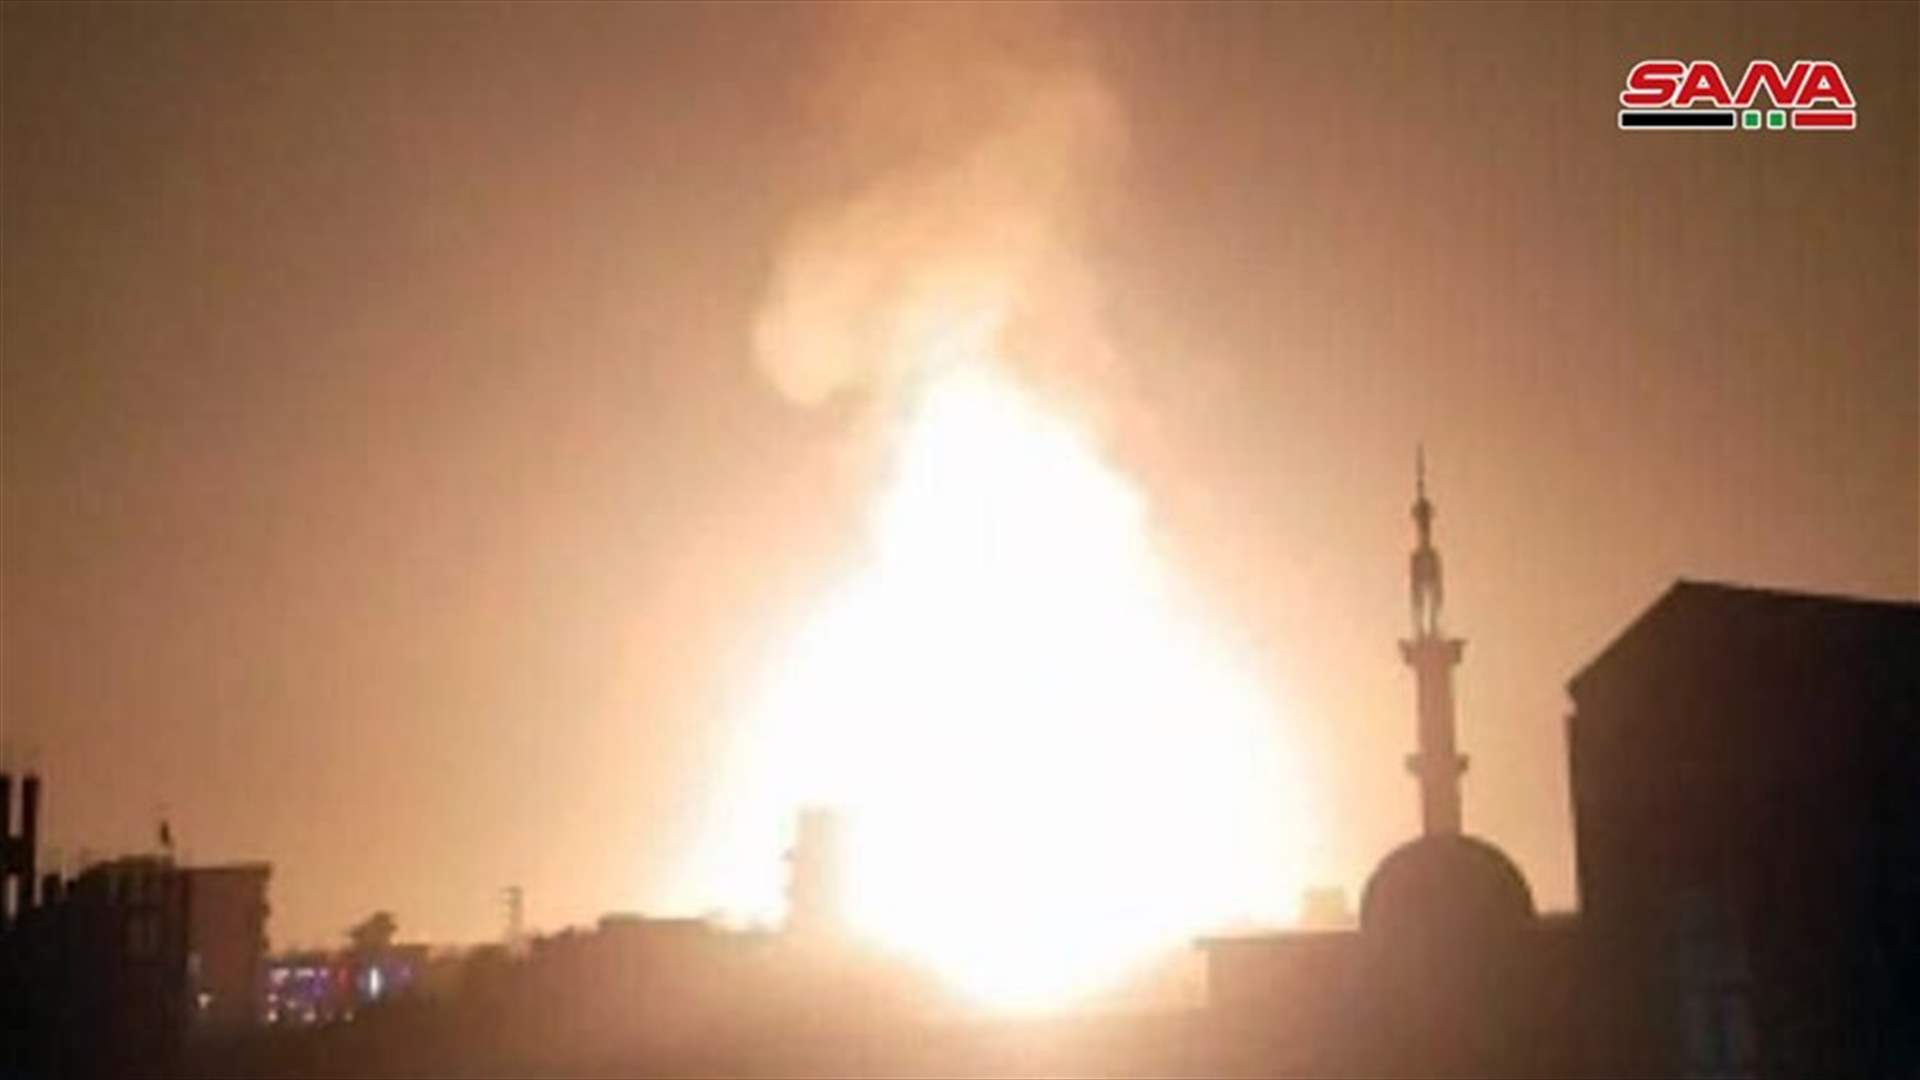 انقطاع الكهرباء بكل أنحاء سوريا بعد انفجار في خط الغاز العربي (فيديو)